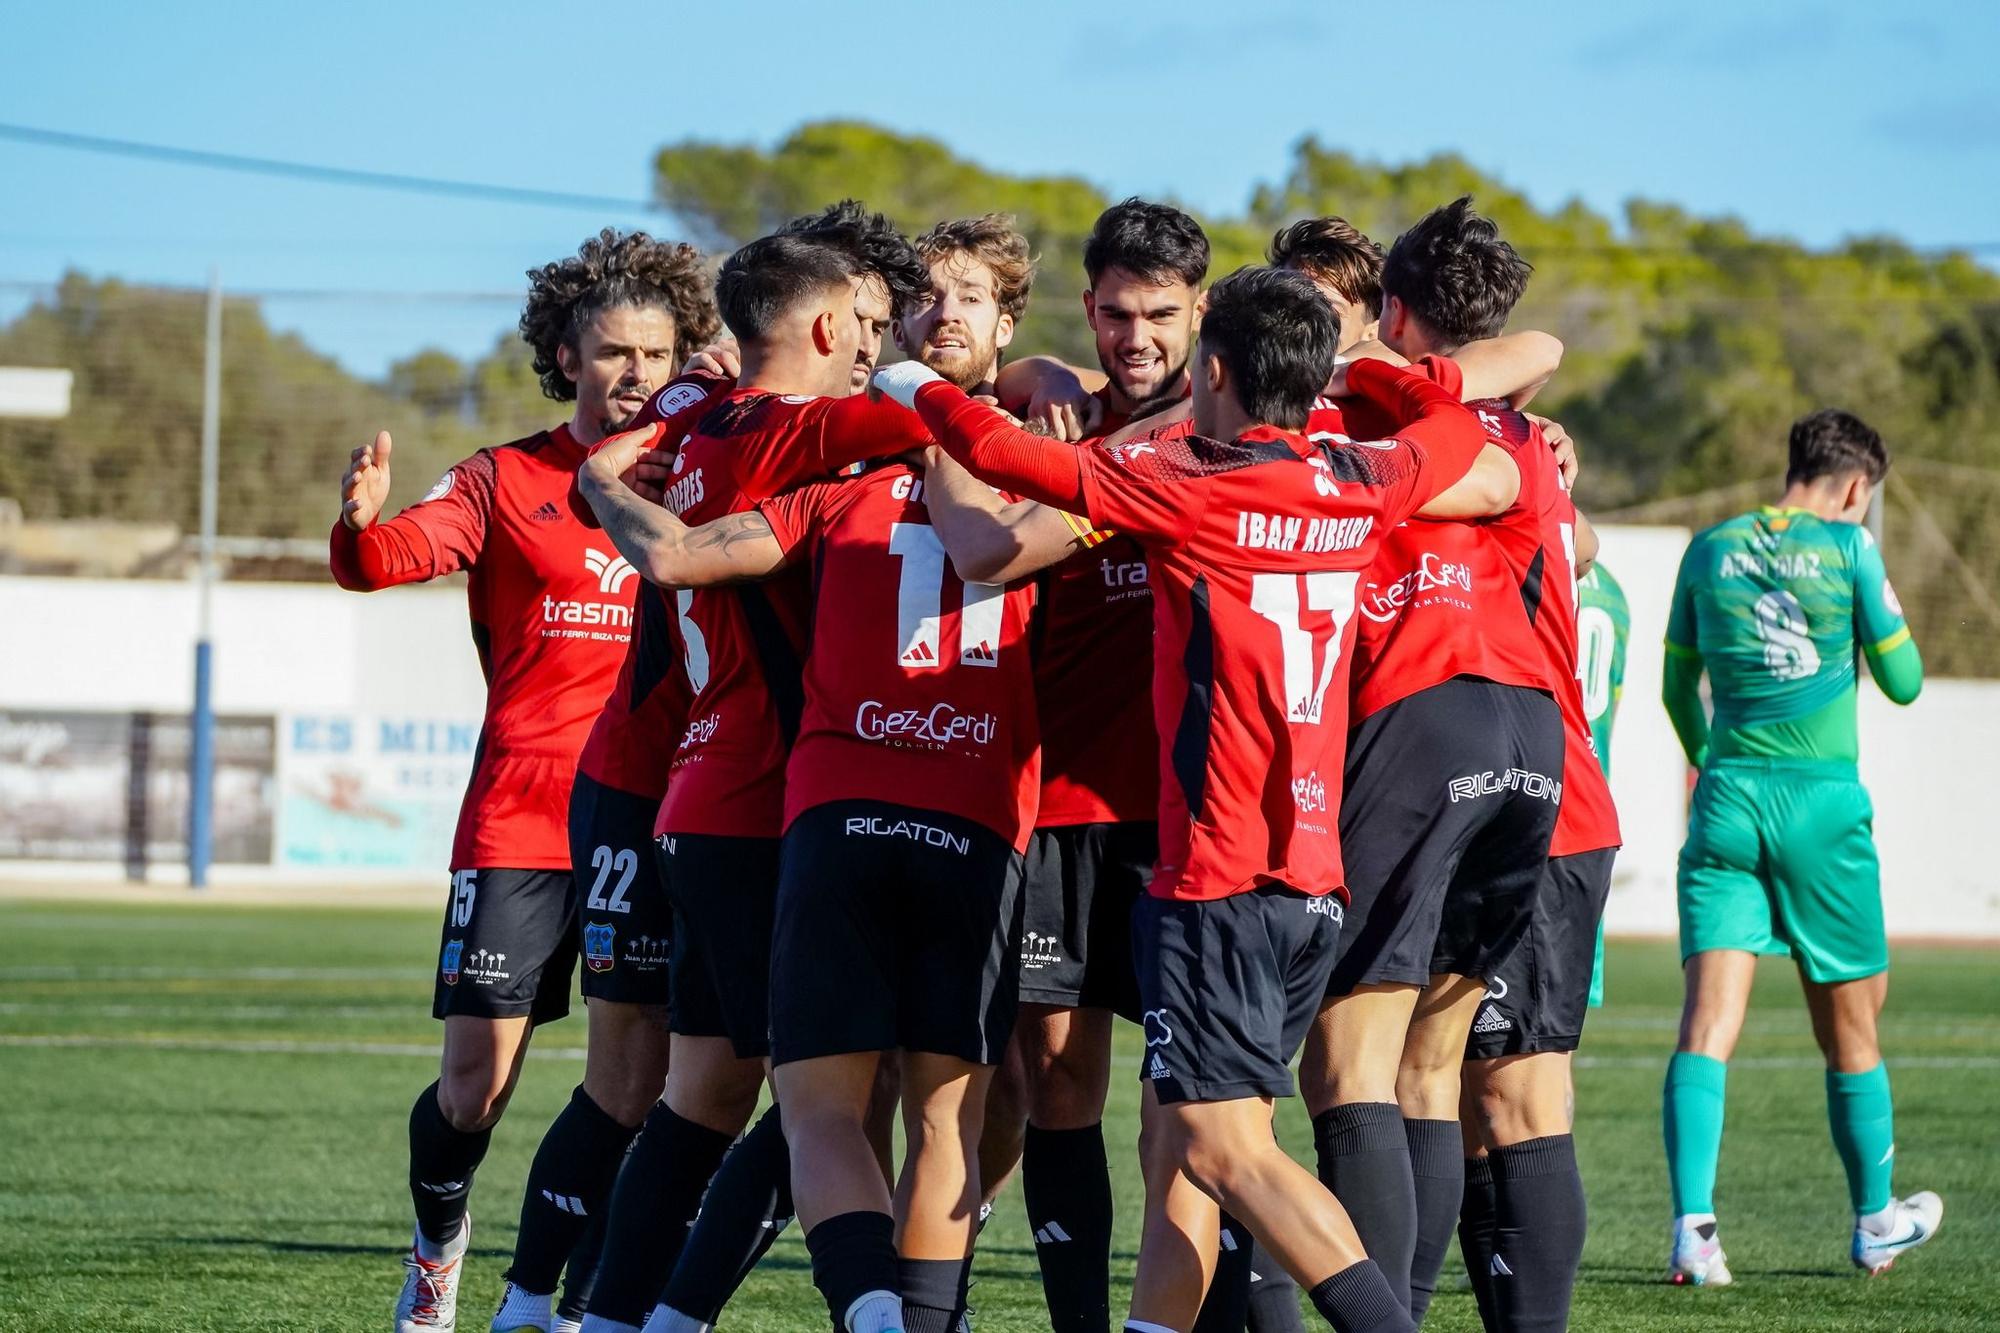 Jugadores de la SD Formentera celebrando un gol en una imagen de archivo